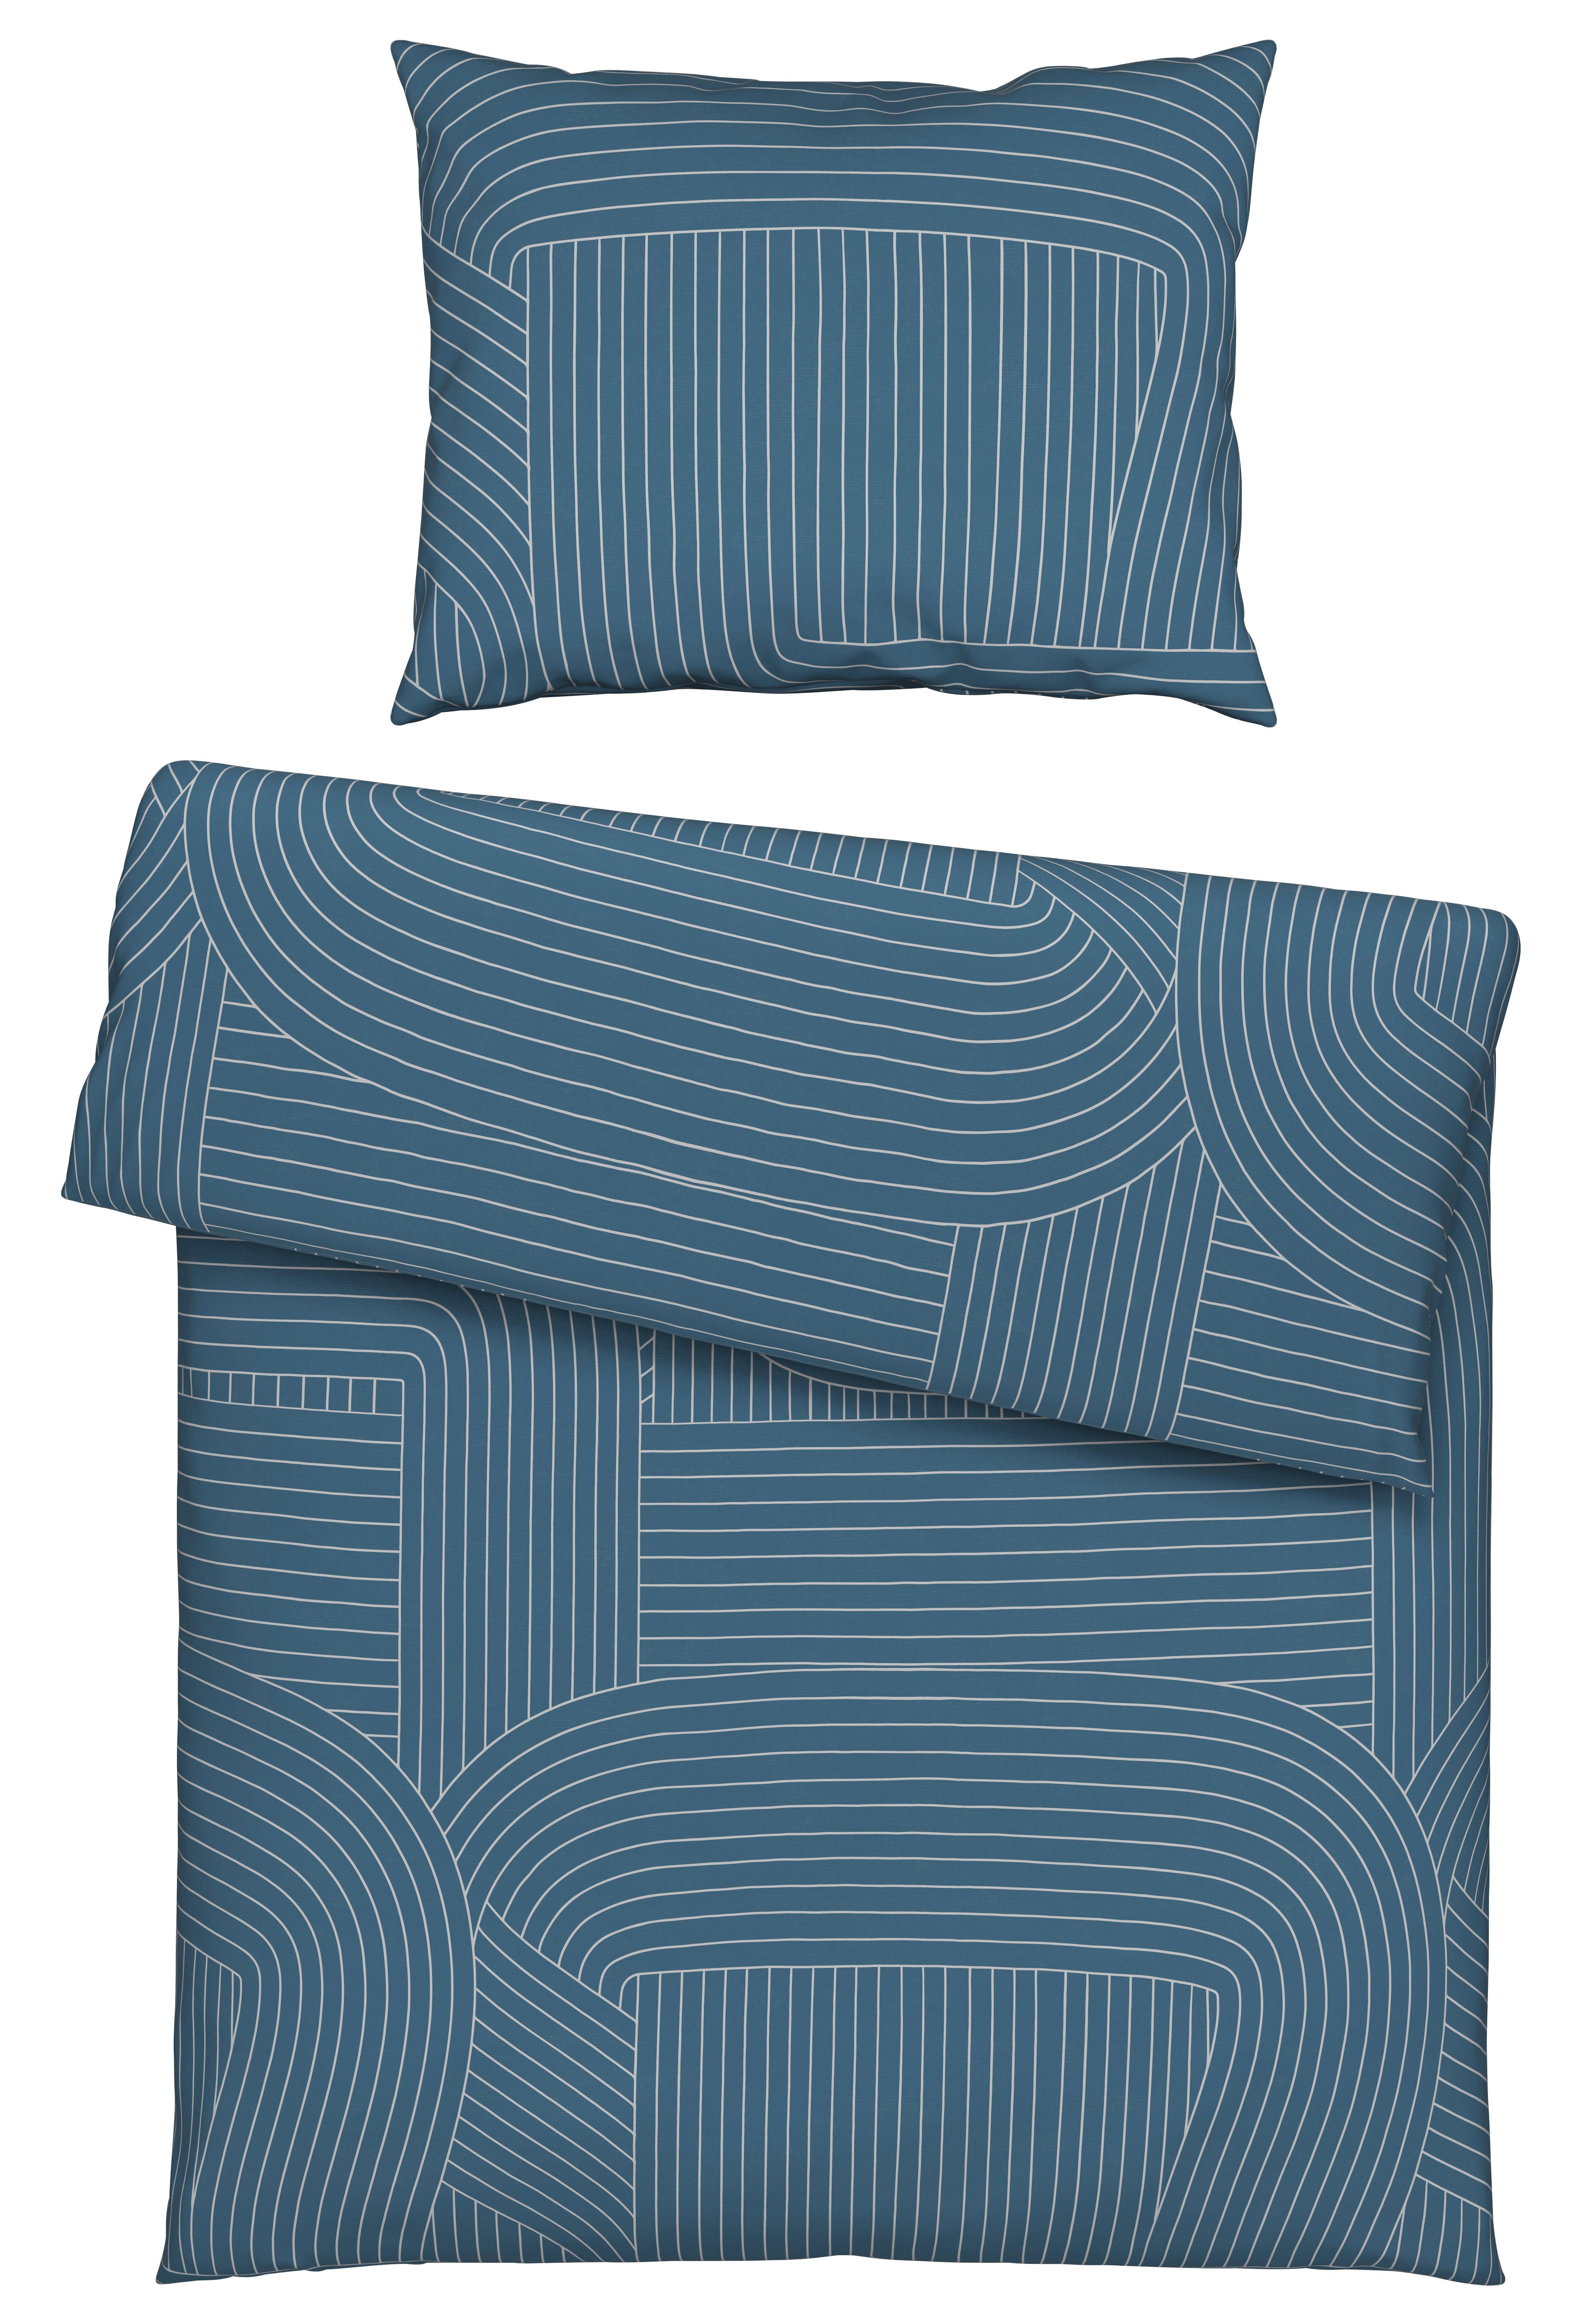 Posteľná Bielizeň Scribble, 140/200cm - modrá, Moderný, textil (140/200cm) - Modern Living